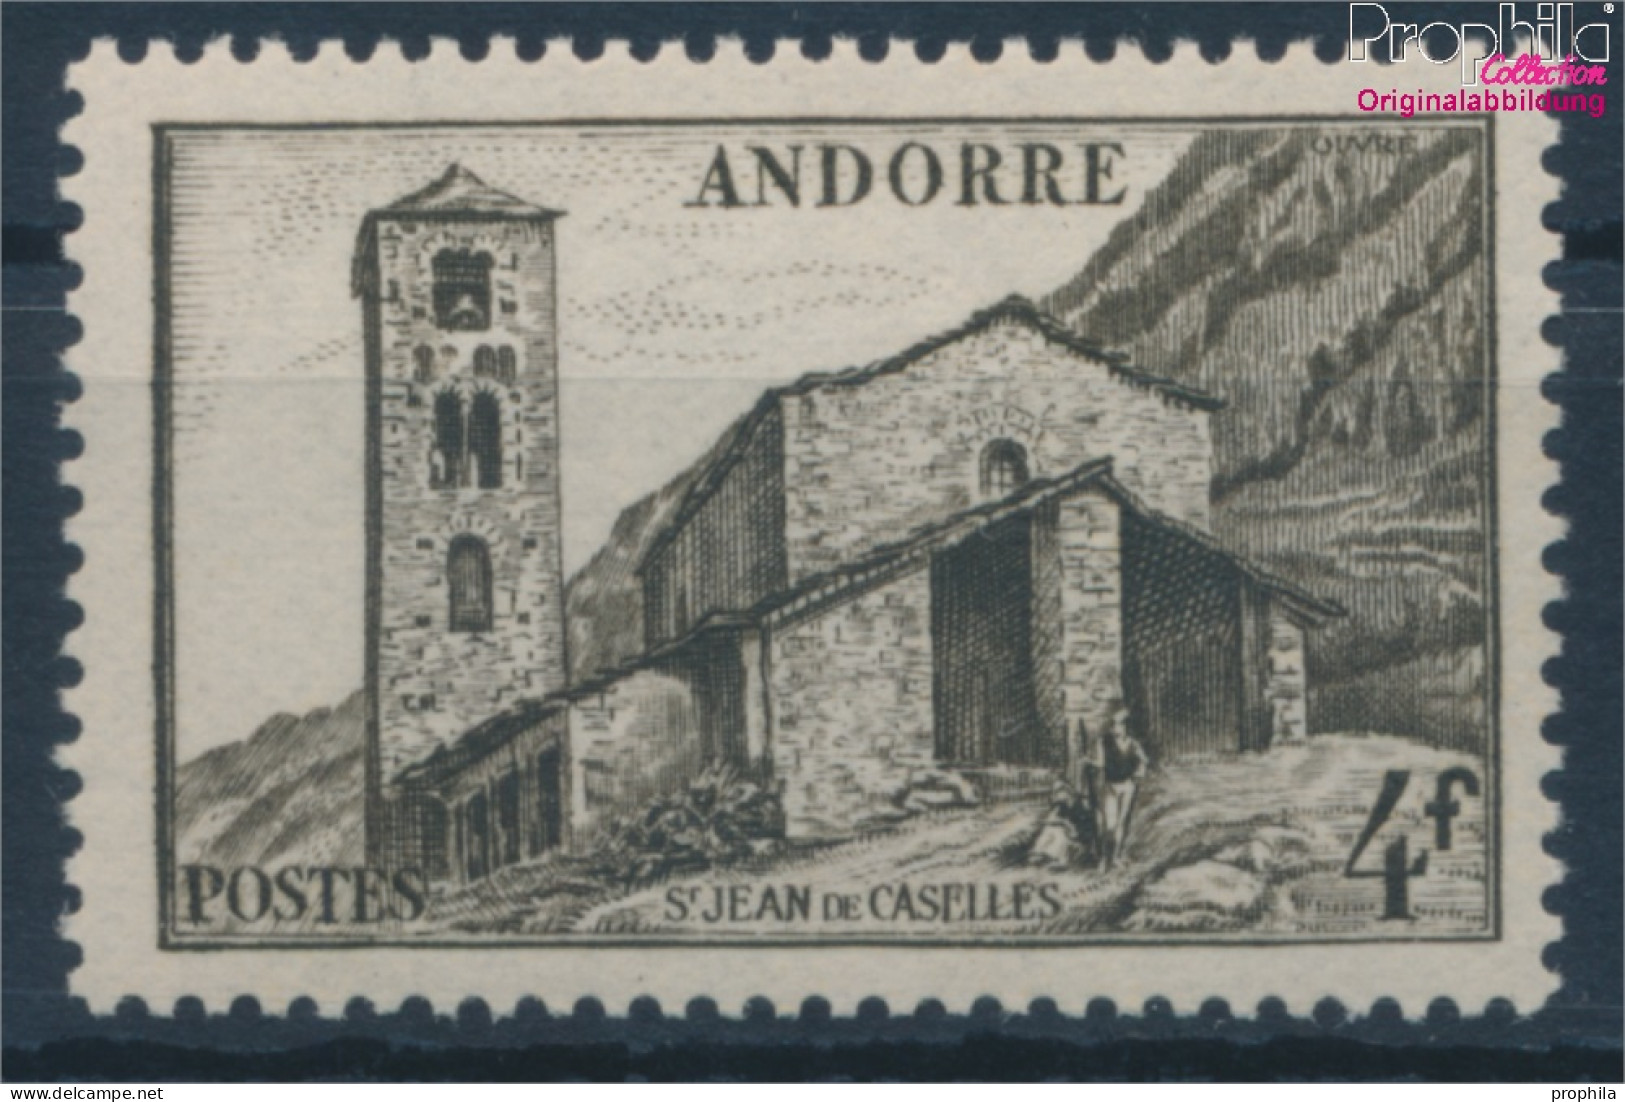 Andorra - Französische Post 113 Postfrisch 1944 Landschaften (10354083 - Ongebruikt